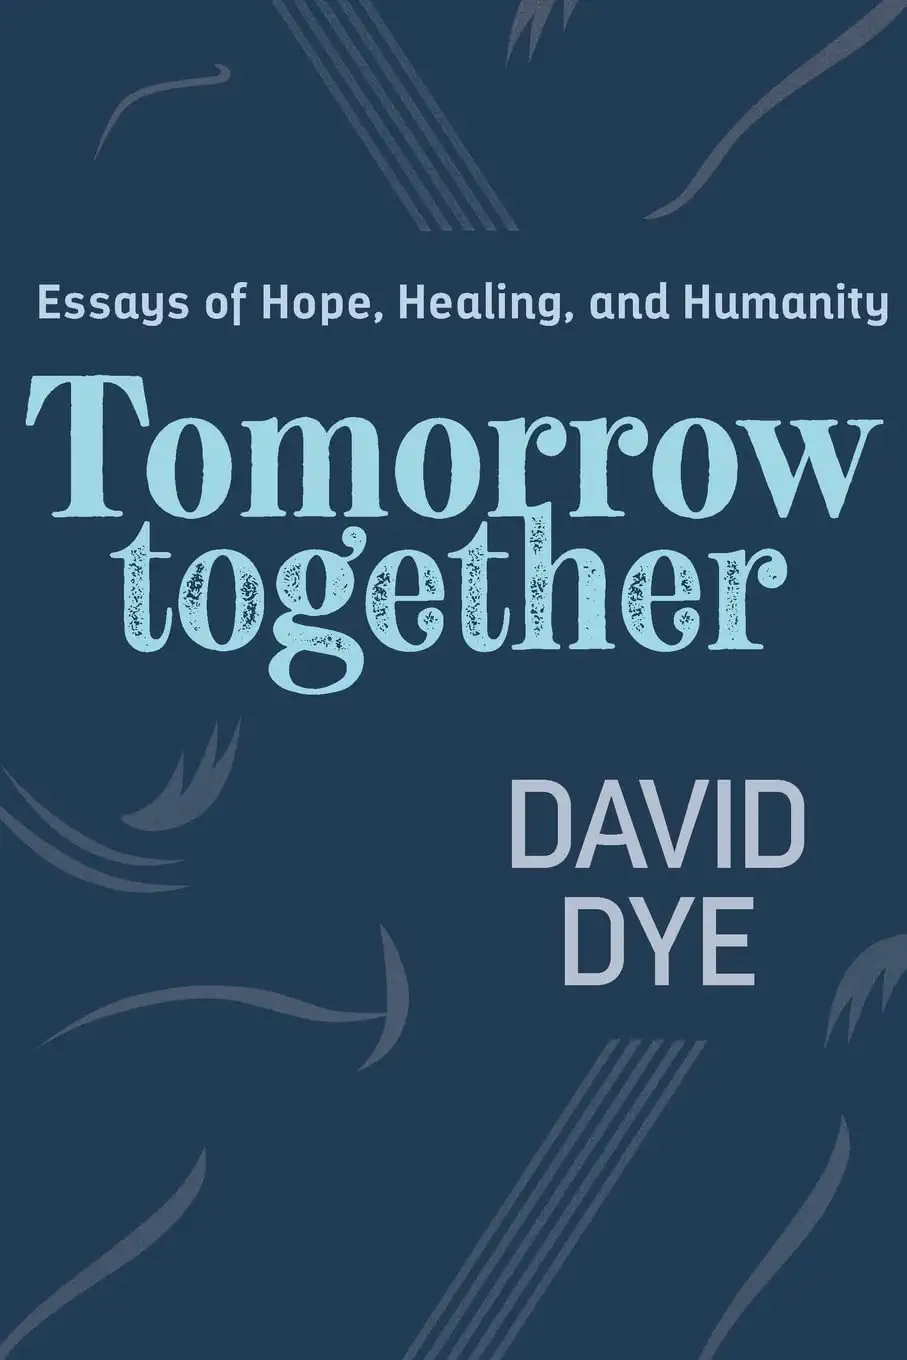 David Dye Book 2022